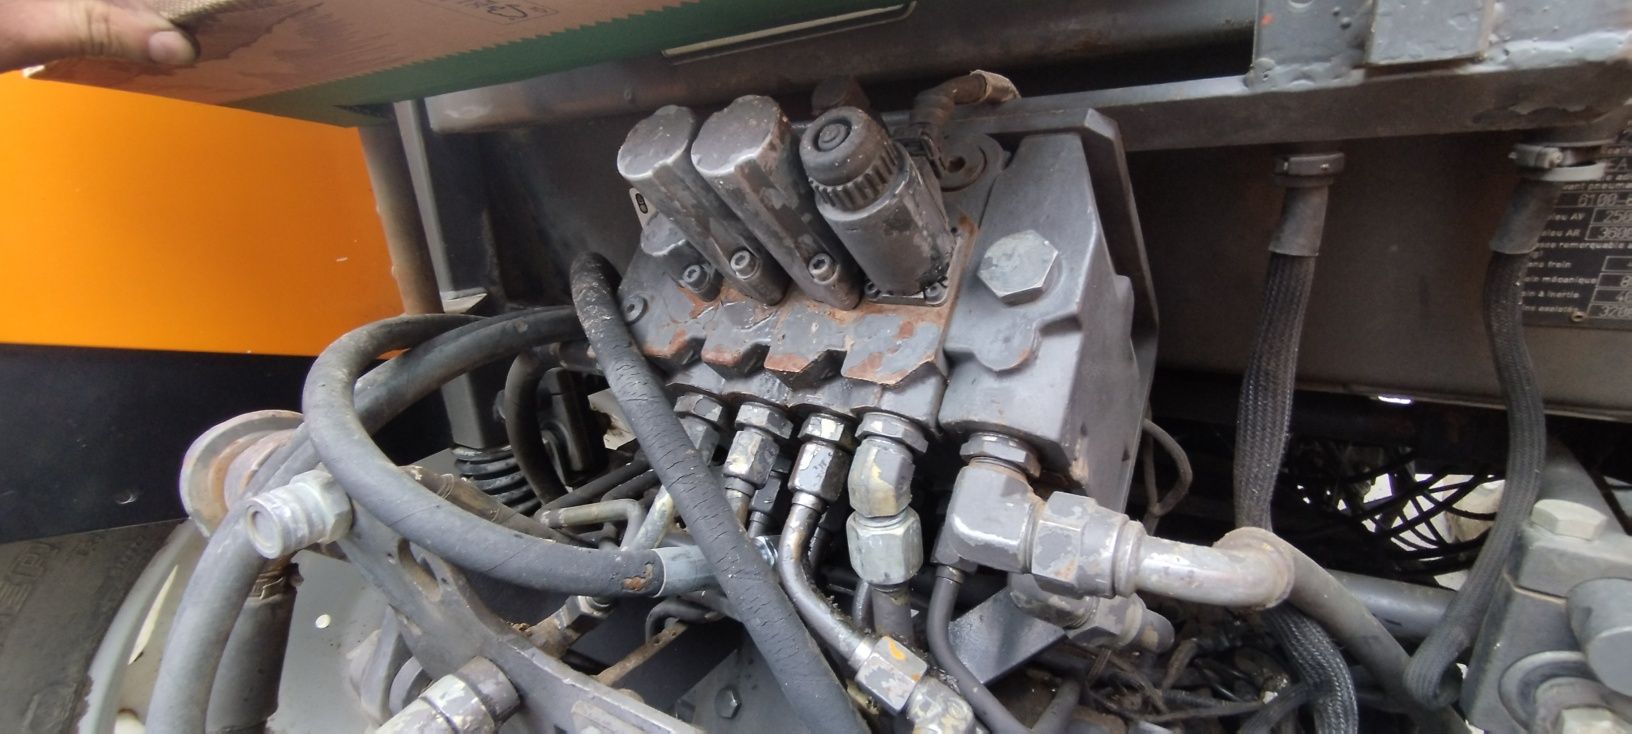 Rozdzielacz hydrauliczny do ciągnika Renault Ares 636 /656 itp